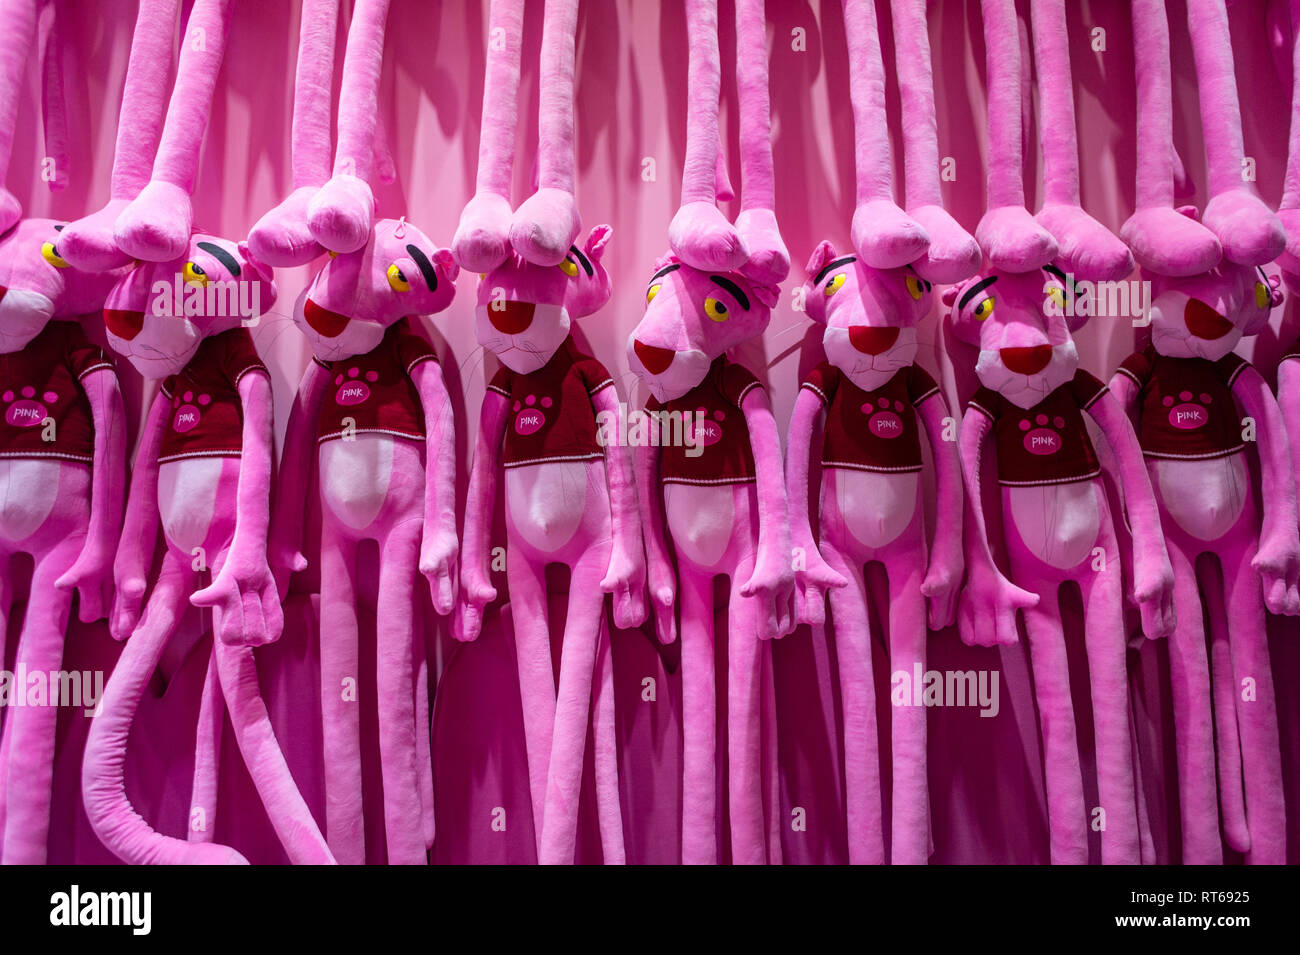 pink panther dolls